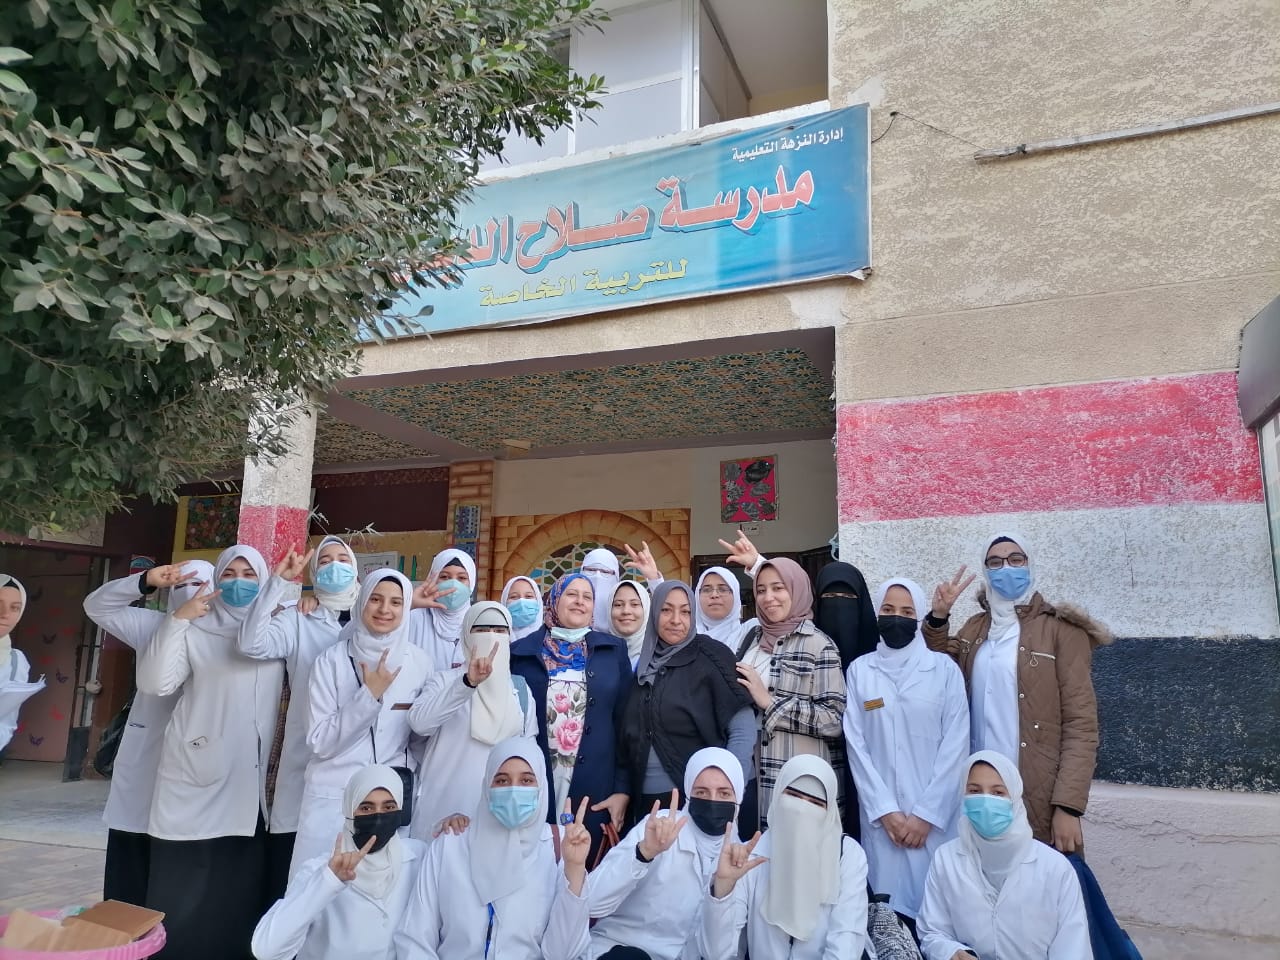 شكر من مدرسة أصحاب الهمم لكلية التمريض جامعة الأزهر بعد زيارة توعوية ناجحة